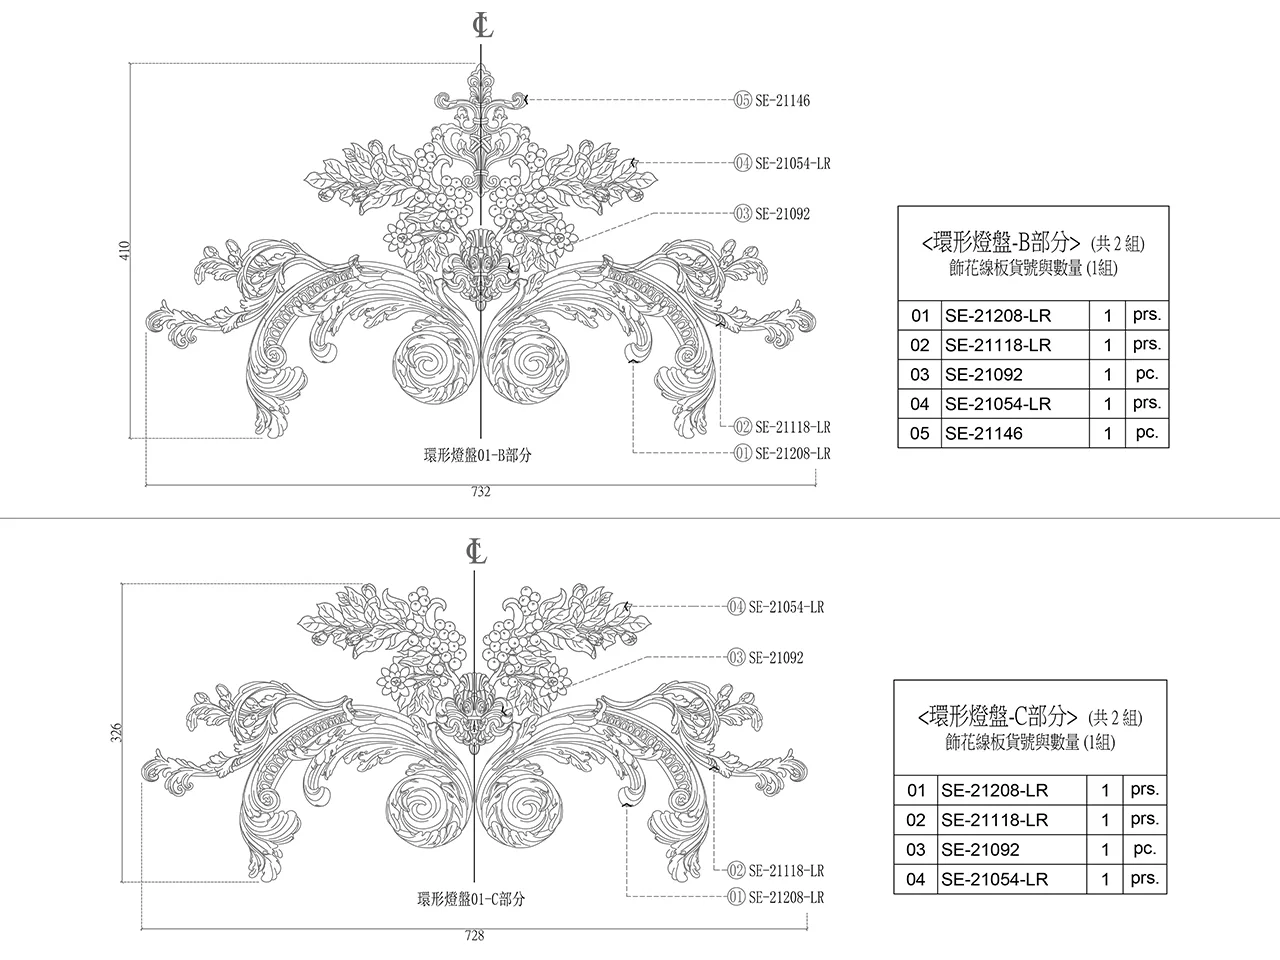 彎角｜環形燈盤｜飾花｜產品模組範例｜OL-0001-B,C部分尺寸表